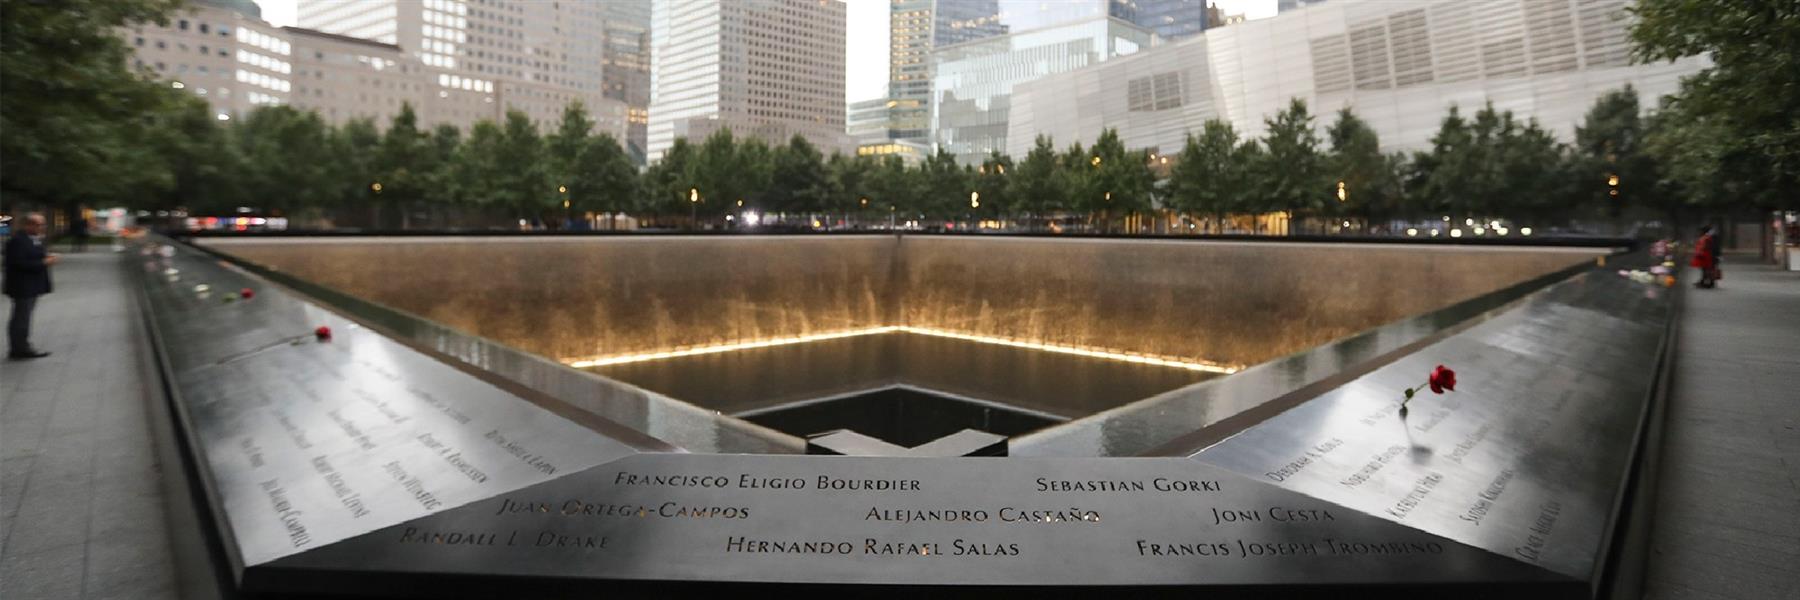 9/11 Memorial & Museum in New York, New York